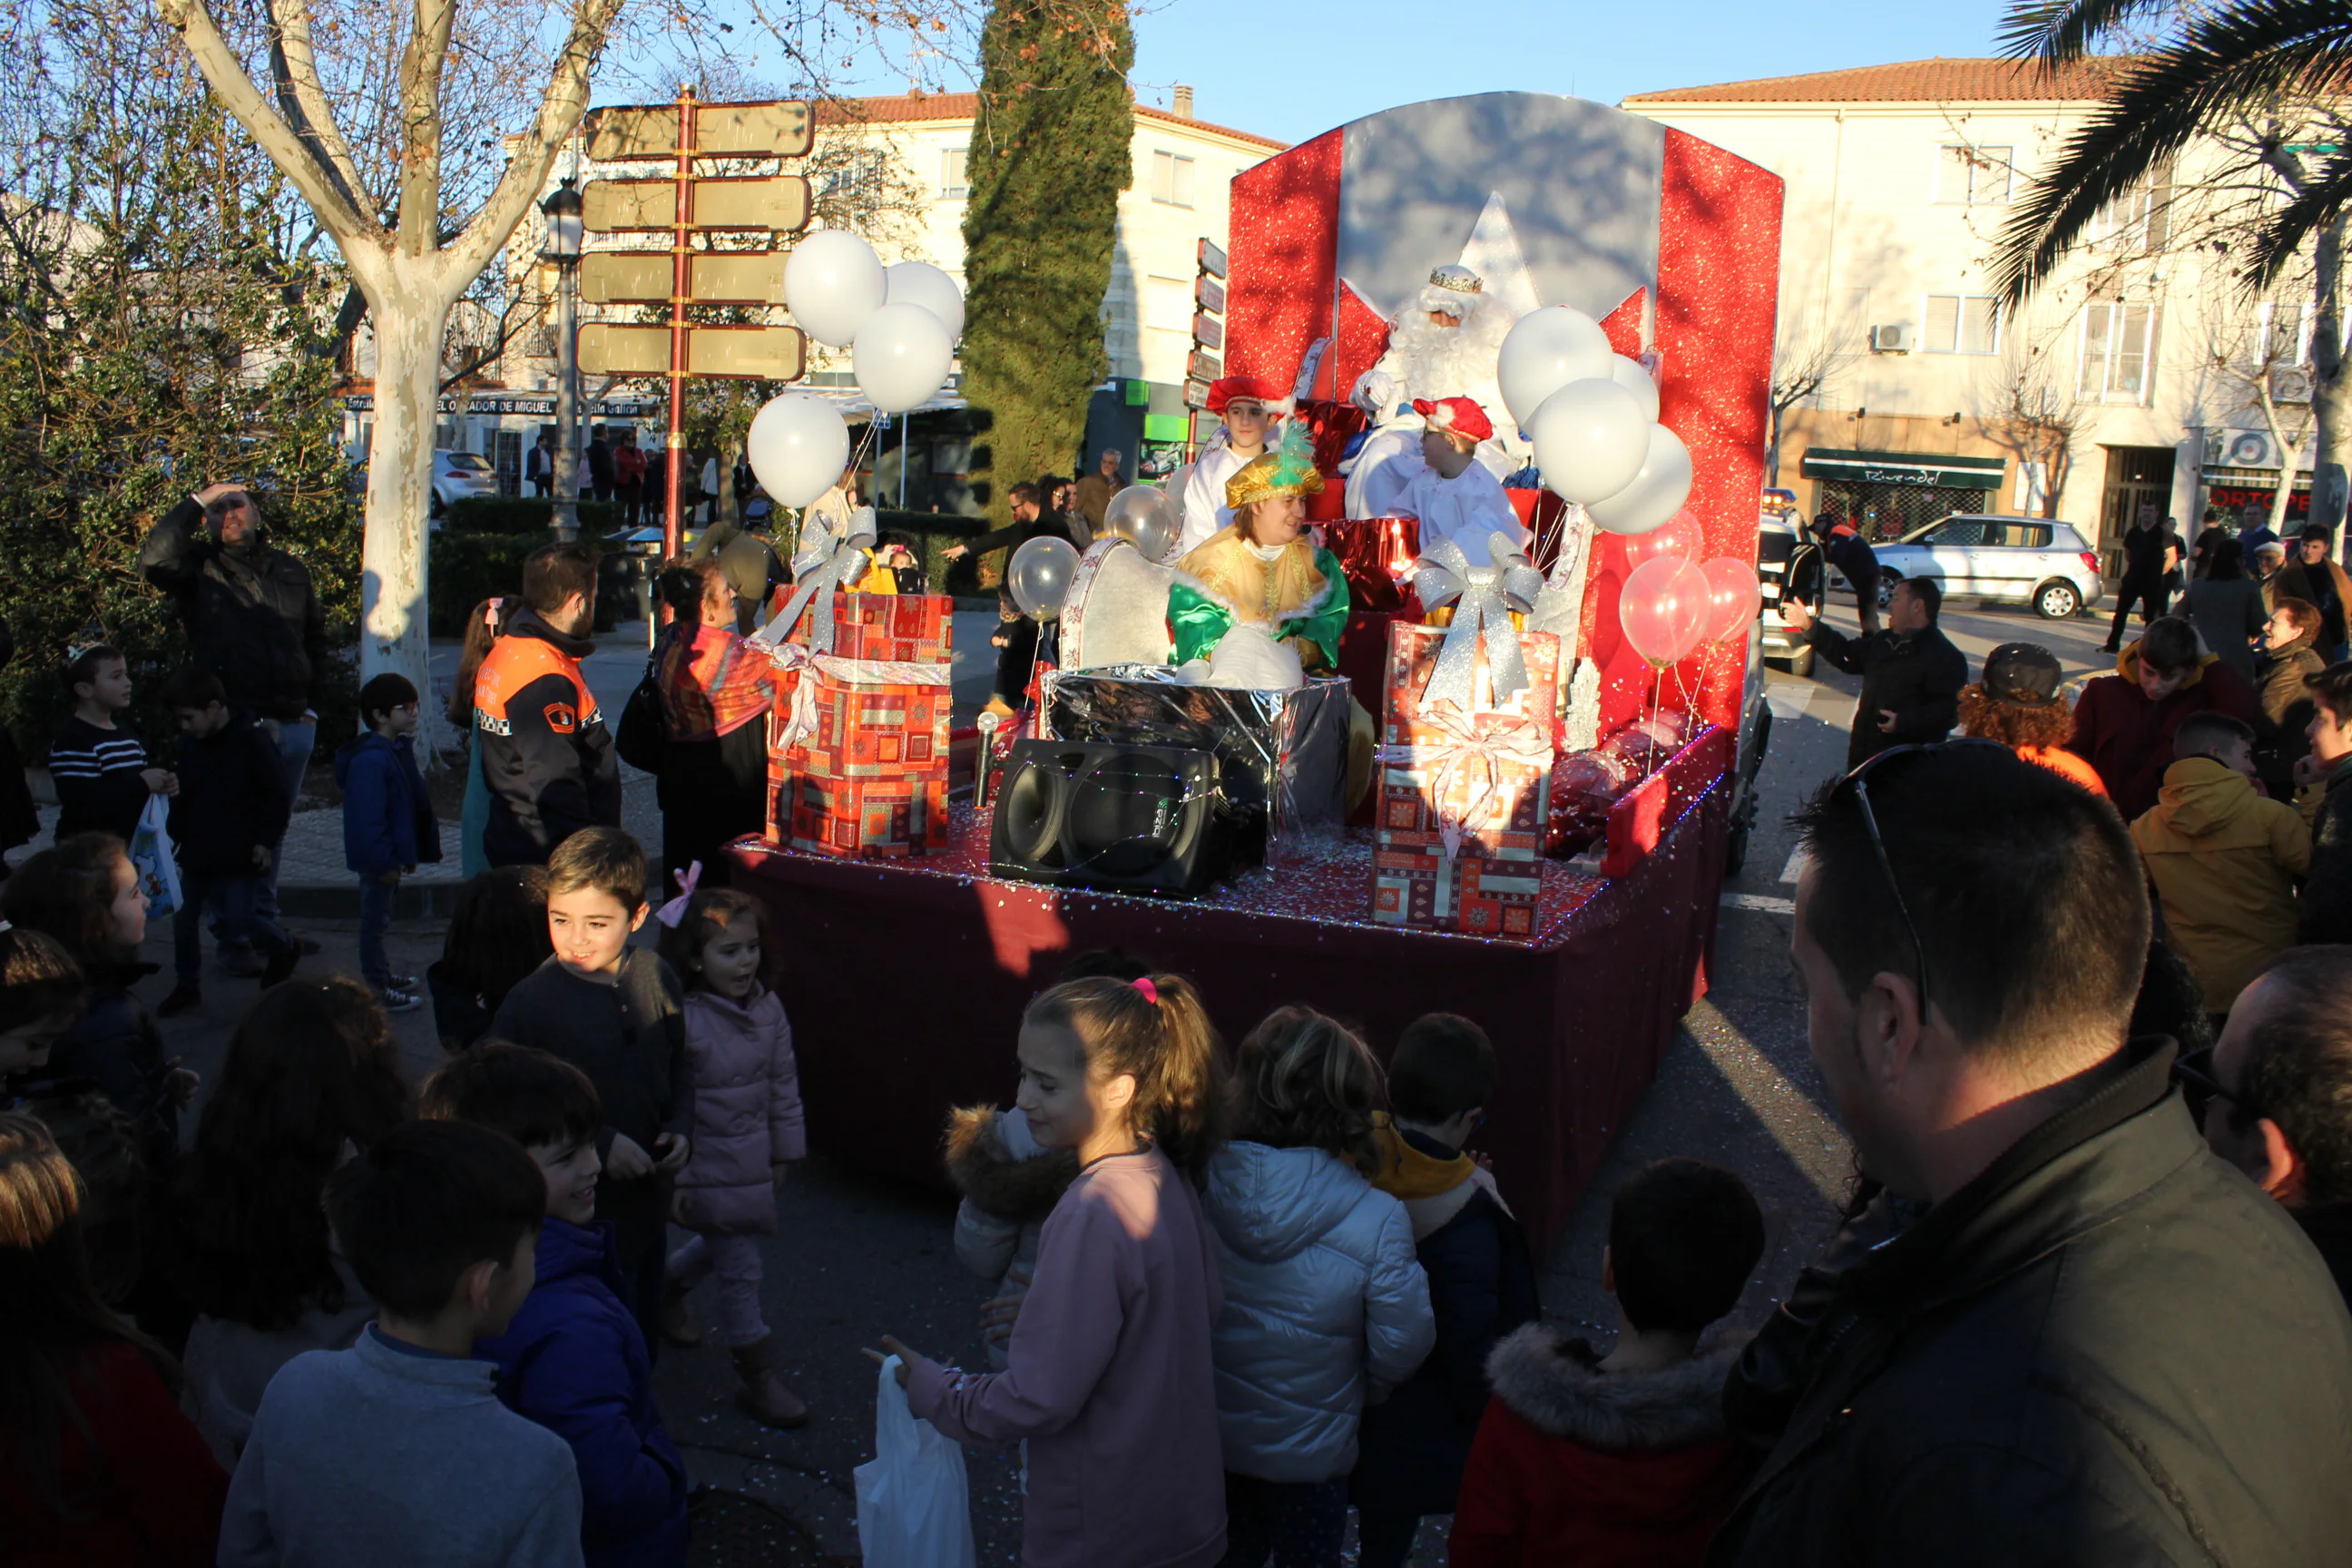 Imagen principal - Los Reyes Magos llenan de ilusión las calles de Casar de Cáceres